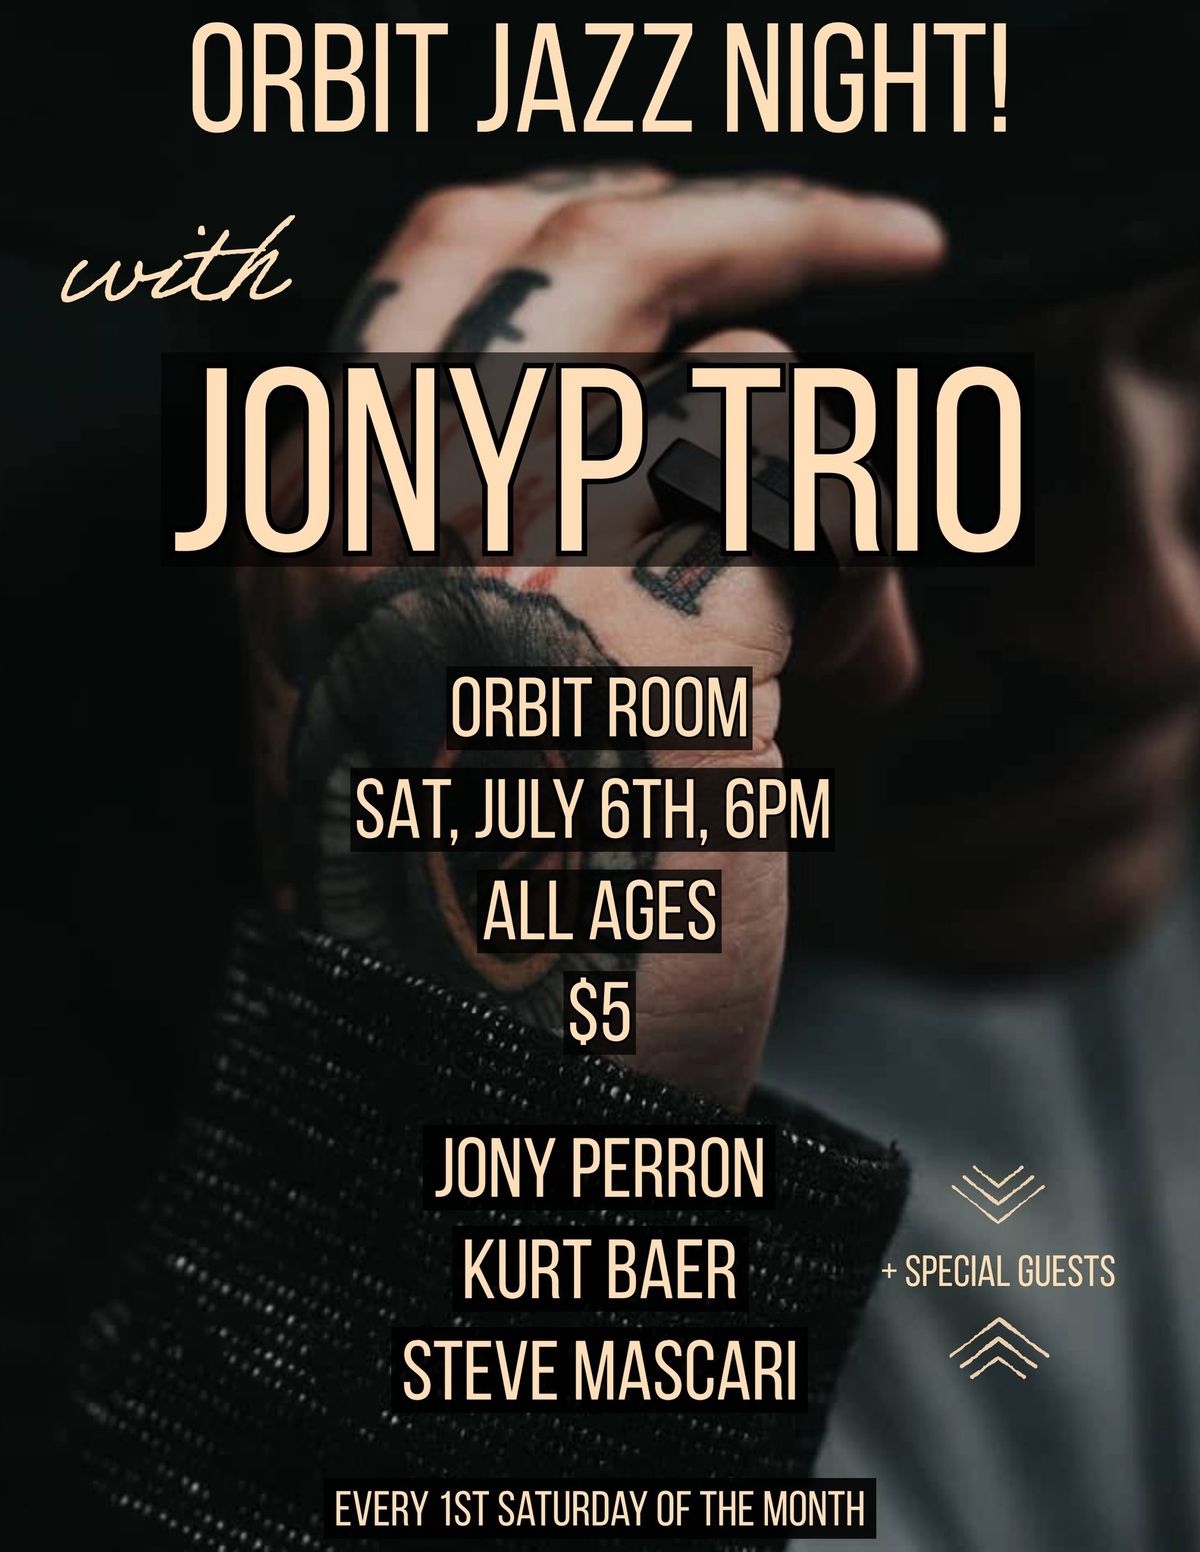 Orbit Jazz Night! - with JonyP trio